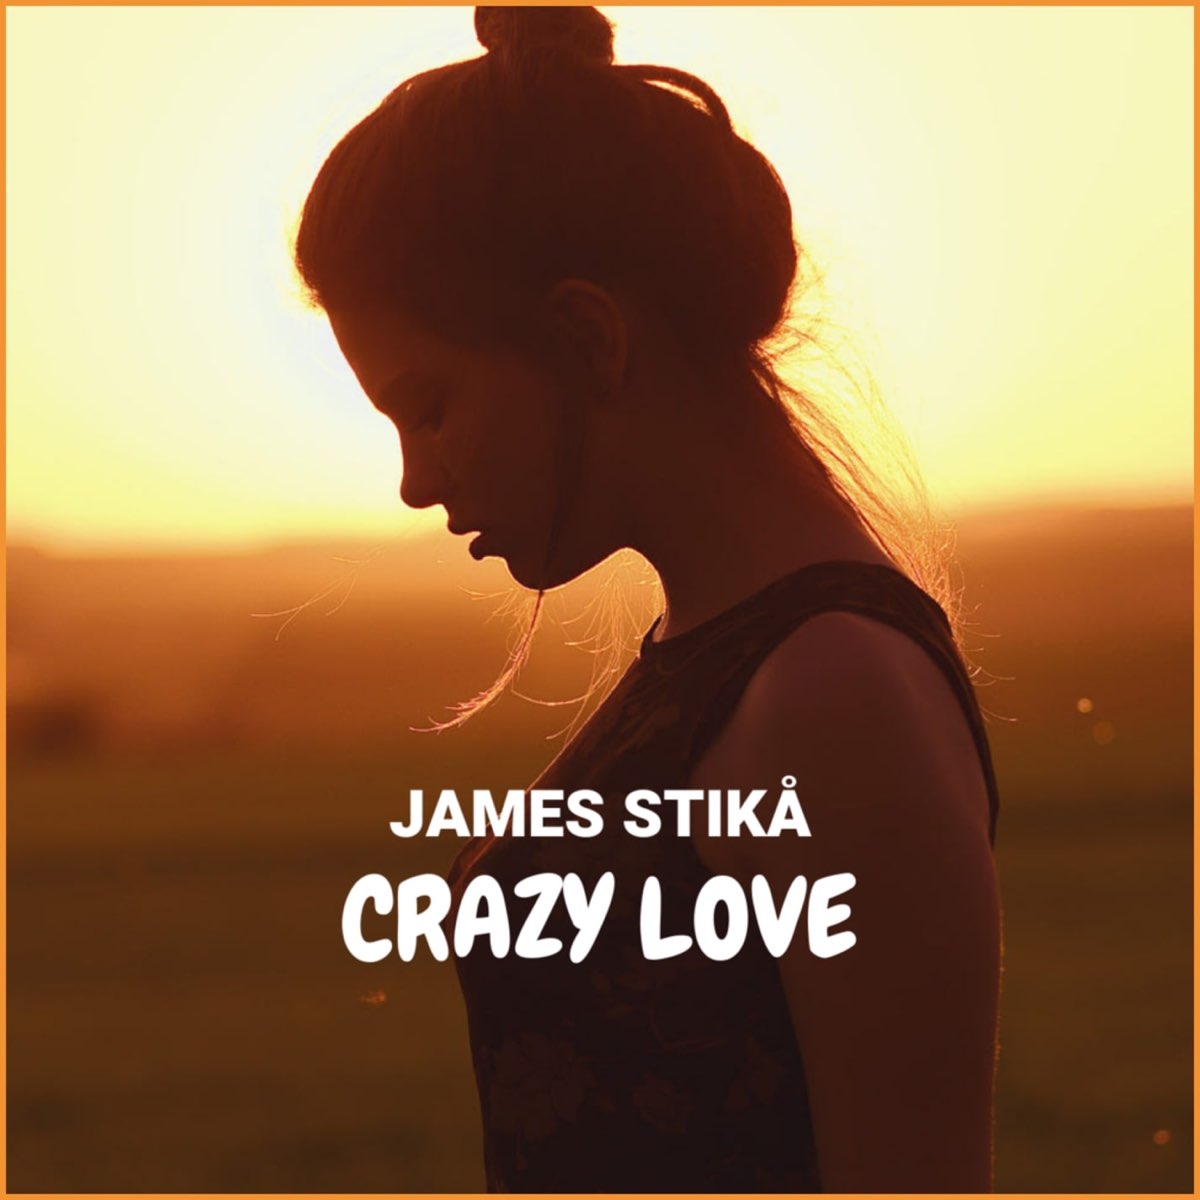 Песня i love me crazy. Исполнитель хитов Crazy in Love. James Stikå - close to you. I Love you Crazy. I'M Crazy for Love песня.